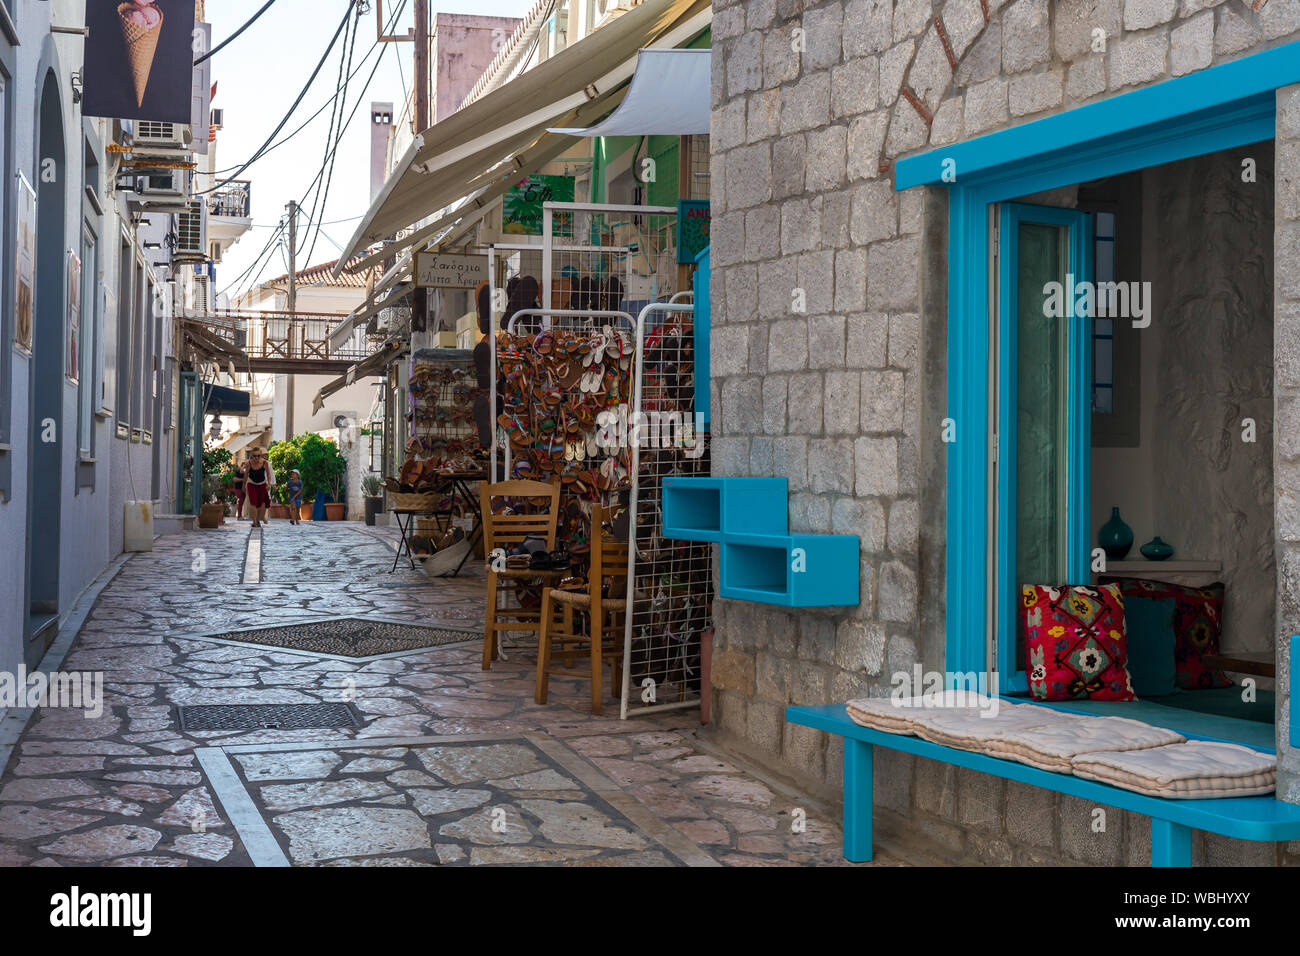 Camminando su traditioanal strade greche, Spetses golfo Saronico, Grecia Foto Stock